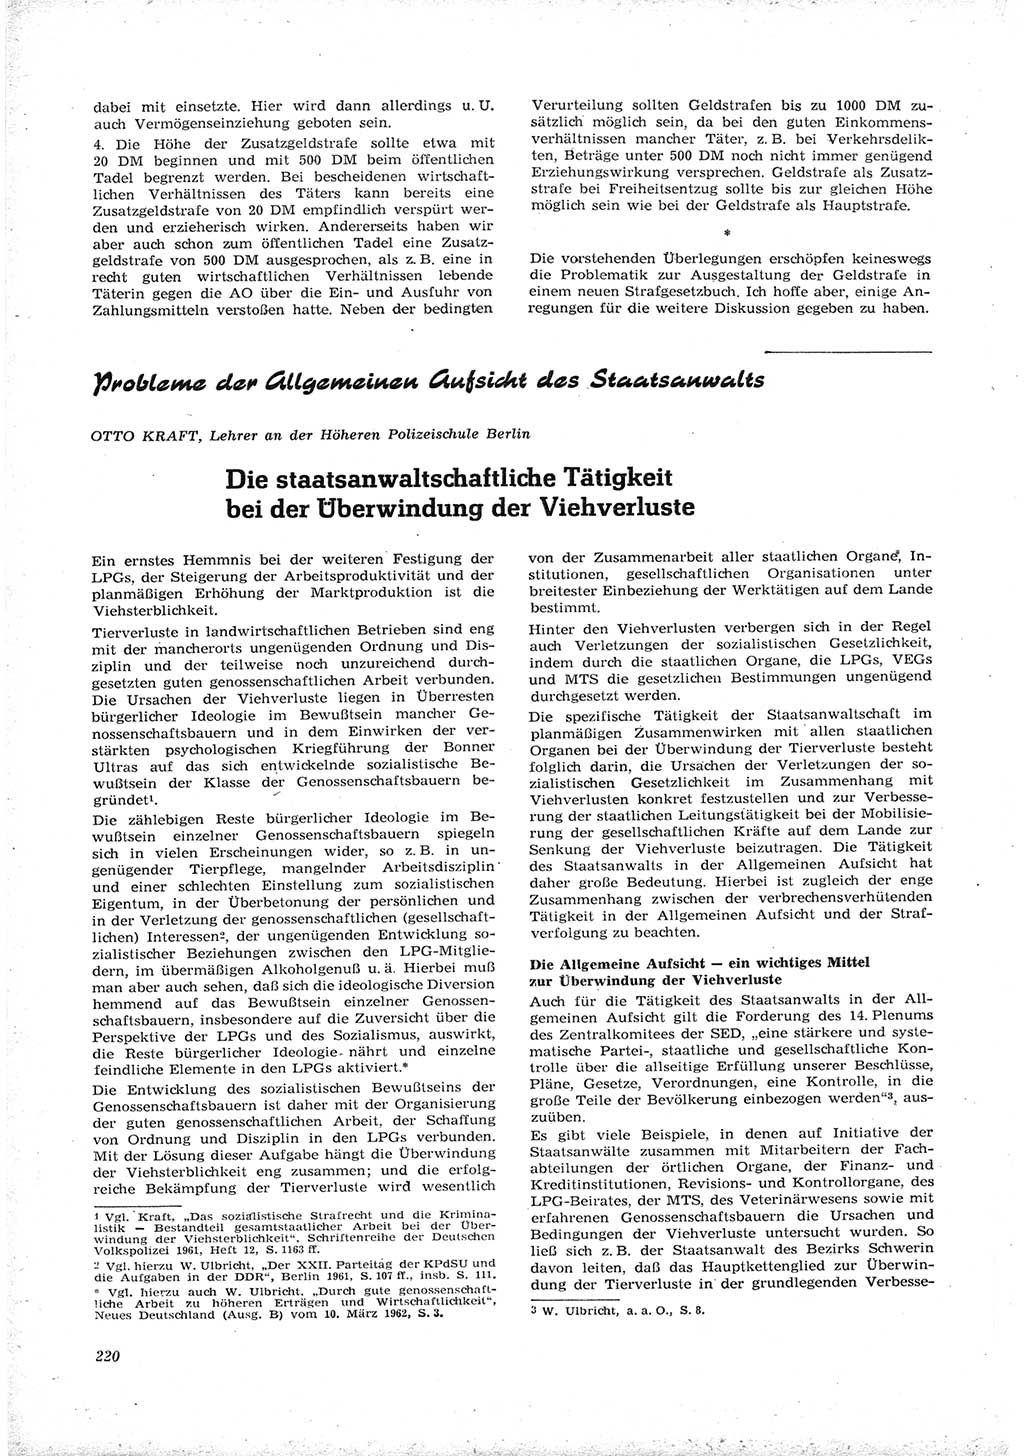 Neue Justiz (NJ), Zeitschrift für Recht und Rechtswissenschaft [Deutsche Demokratische Republik (DDR)], 16. Jahrgang 1962, Seite 220 (NJ DDR 1962, S. 220)